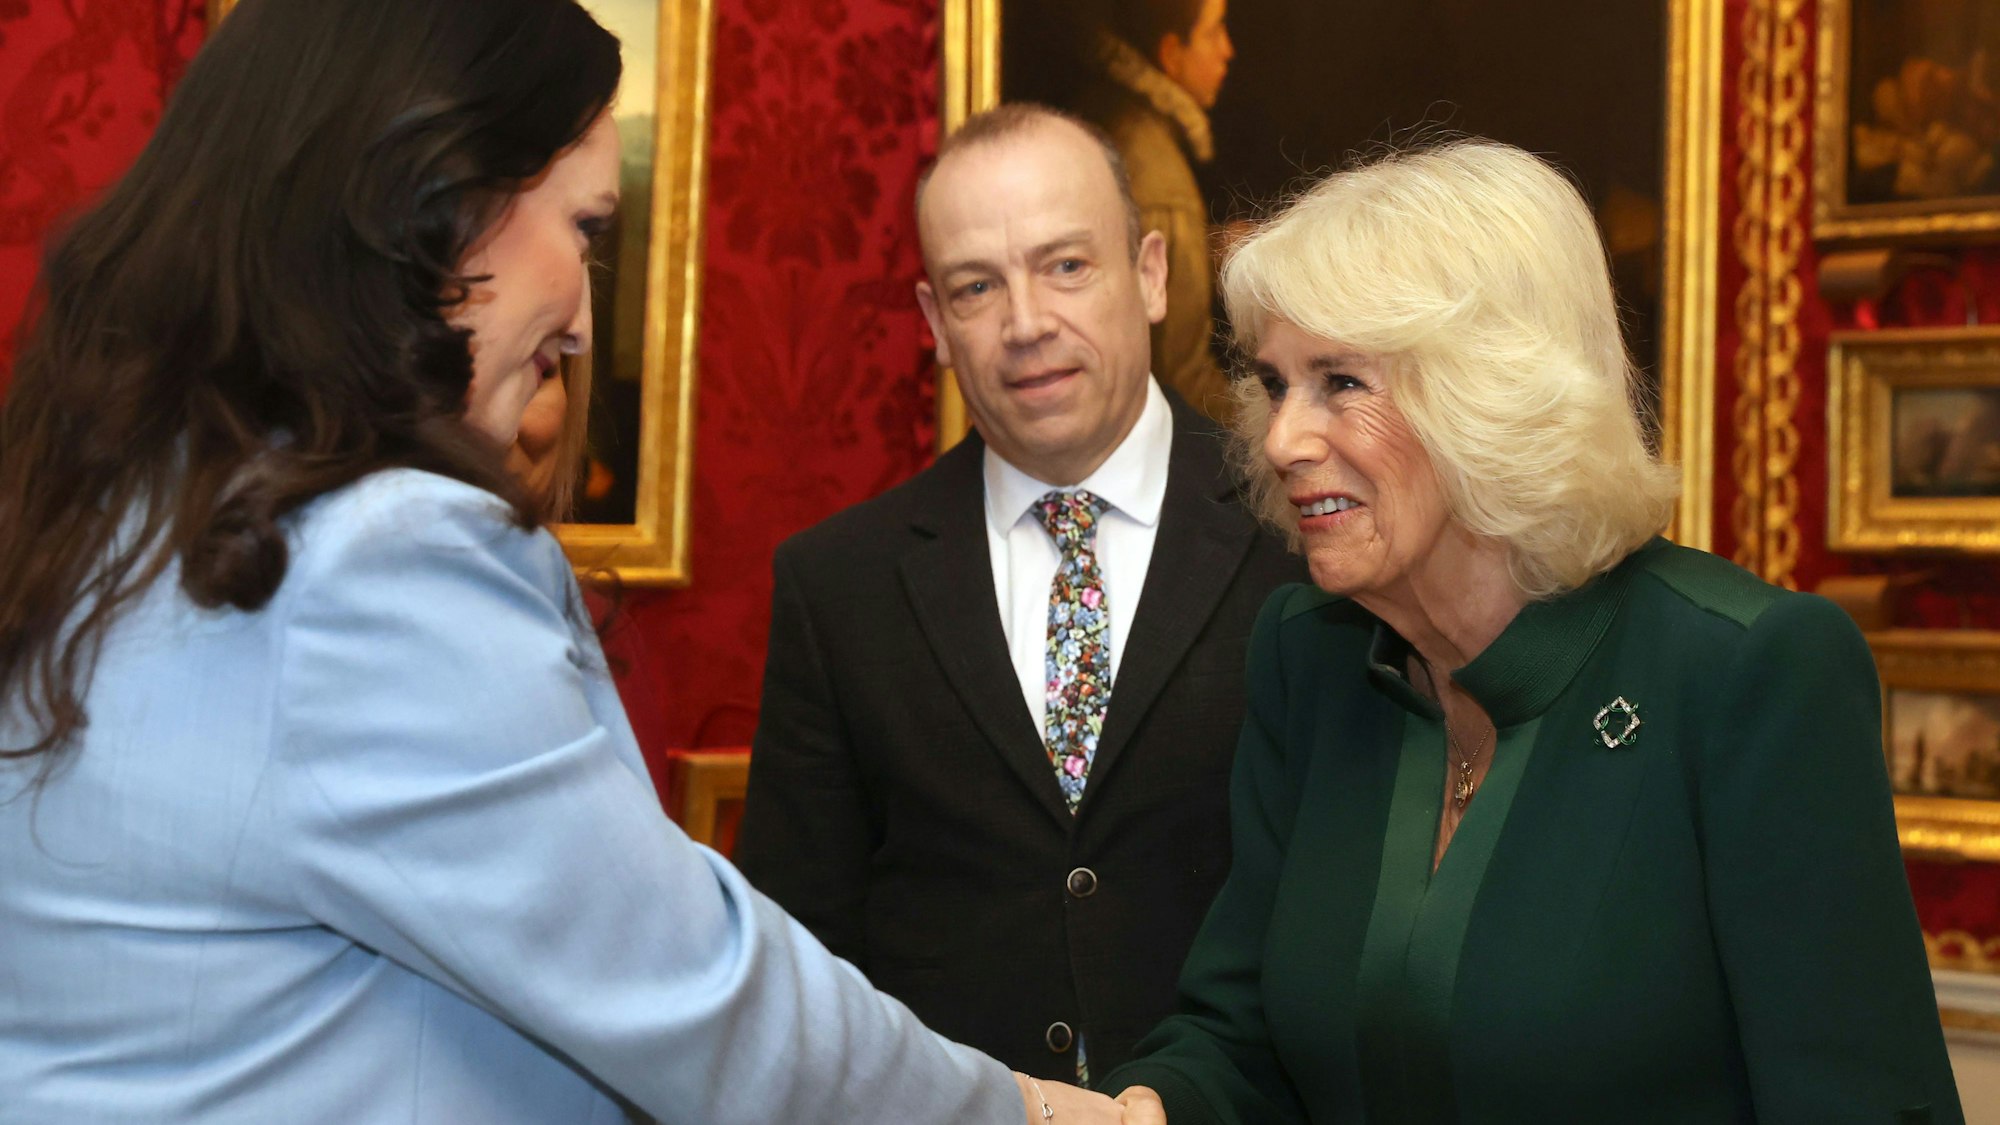 Während ihres zweitägigen offiziellen Besuchs in Nordirland unterhält sich Königin Camilla (rechts) mit der stellvertretenden Ersten Ministerin von Nordirland, Emma Little-Pengelly (links), und dem Minister für Nordirland, Chris Heaton-Harris (Zweite von rechts), bei einer Veranstaltung im Queen's Reading Room anlässlich des Welttags der Poesie.